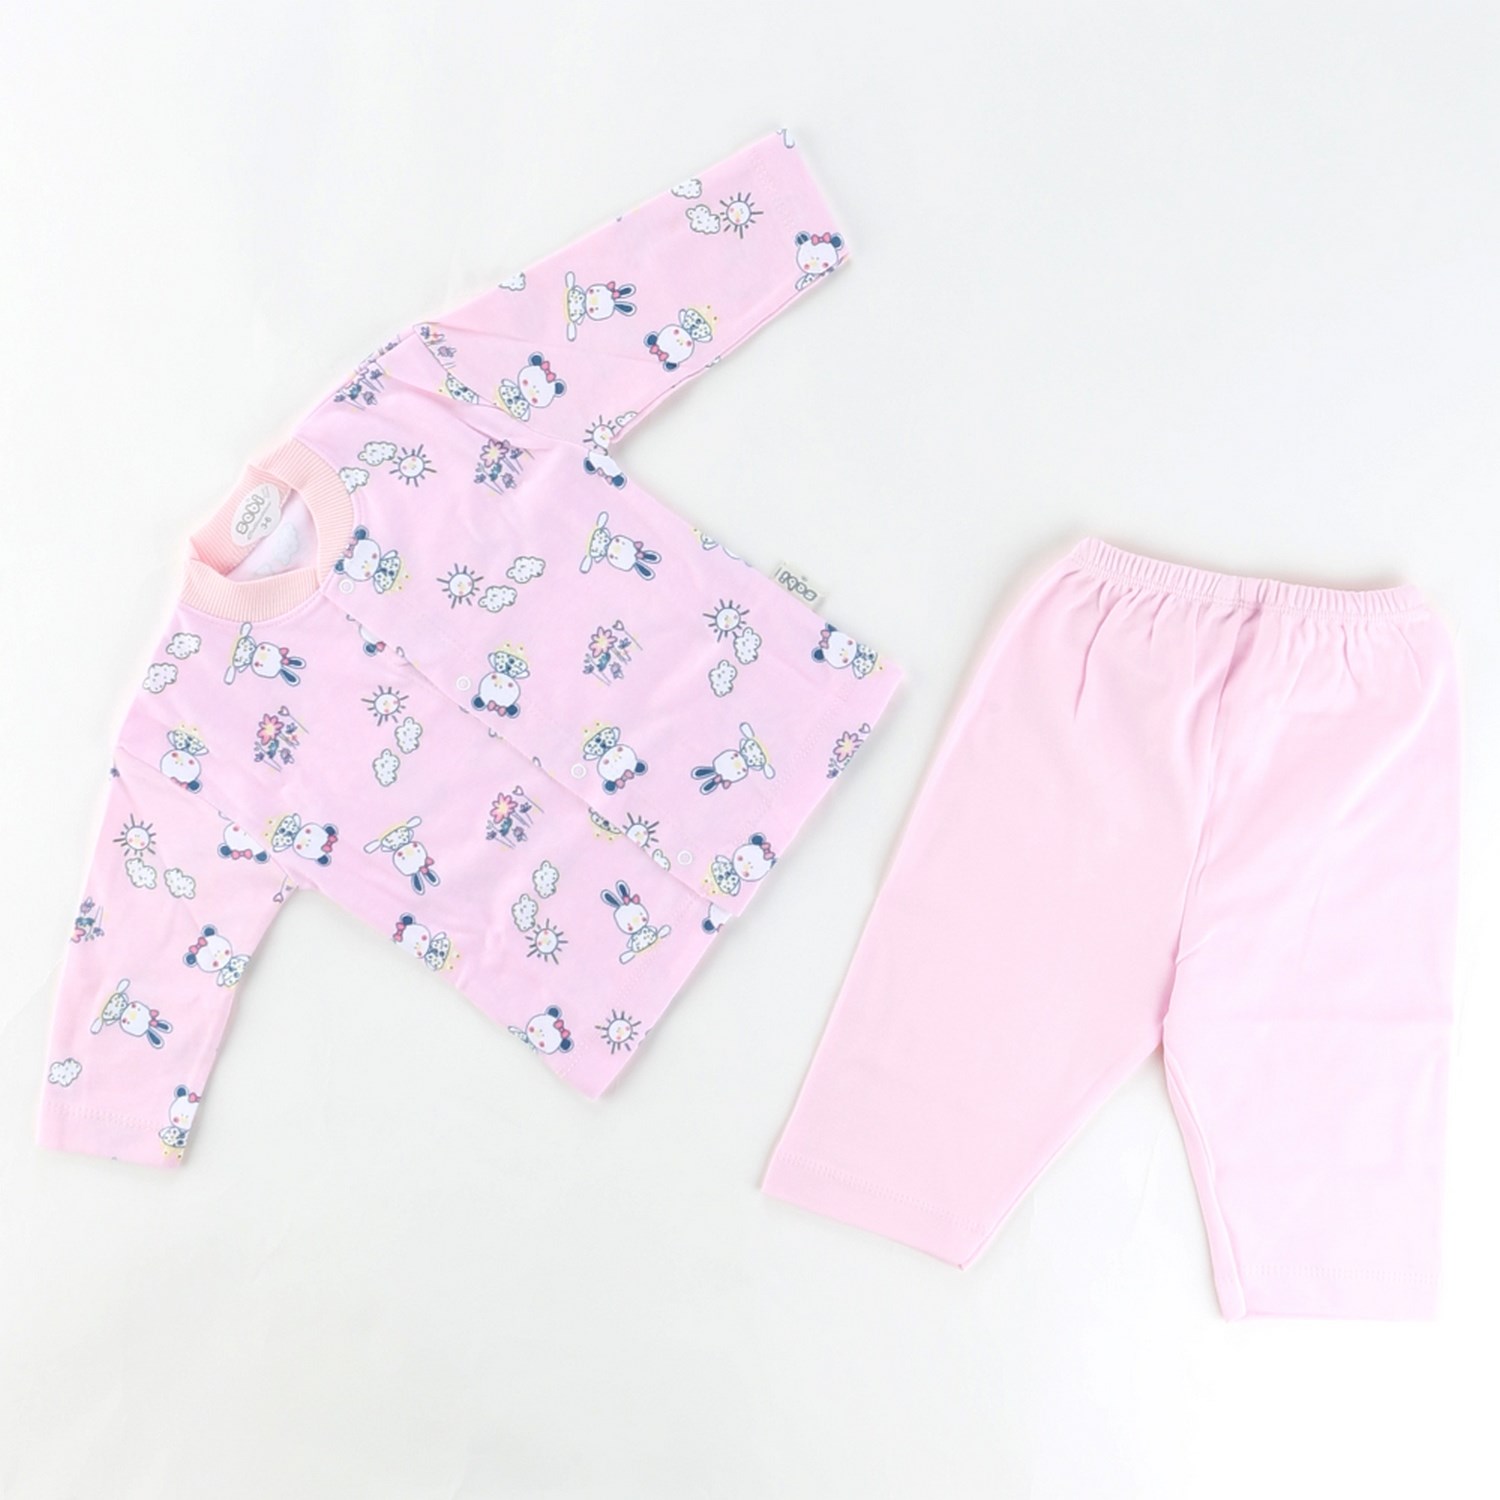 Sebi Bebe Ayılı Kız Baskılı Bebek Pijama Takımı 2329 Pembe